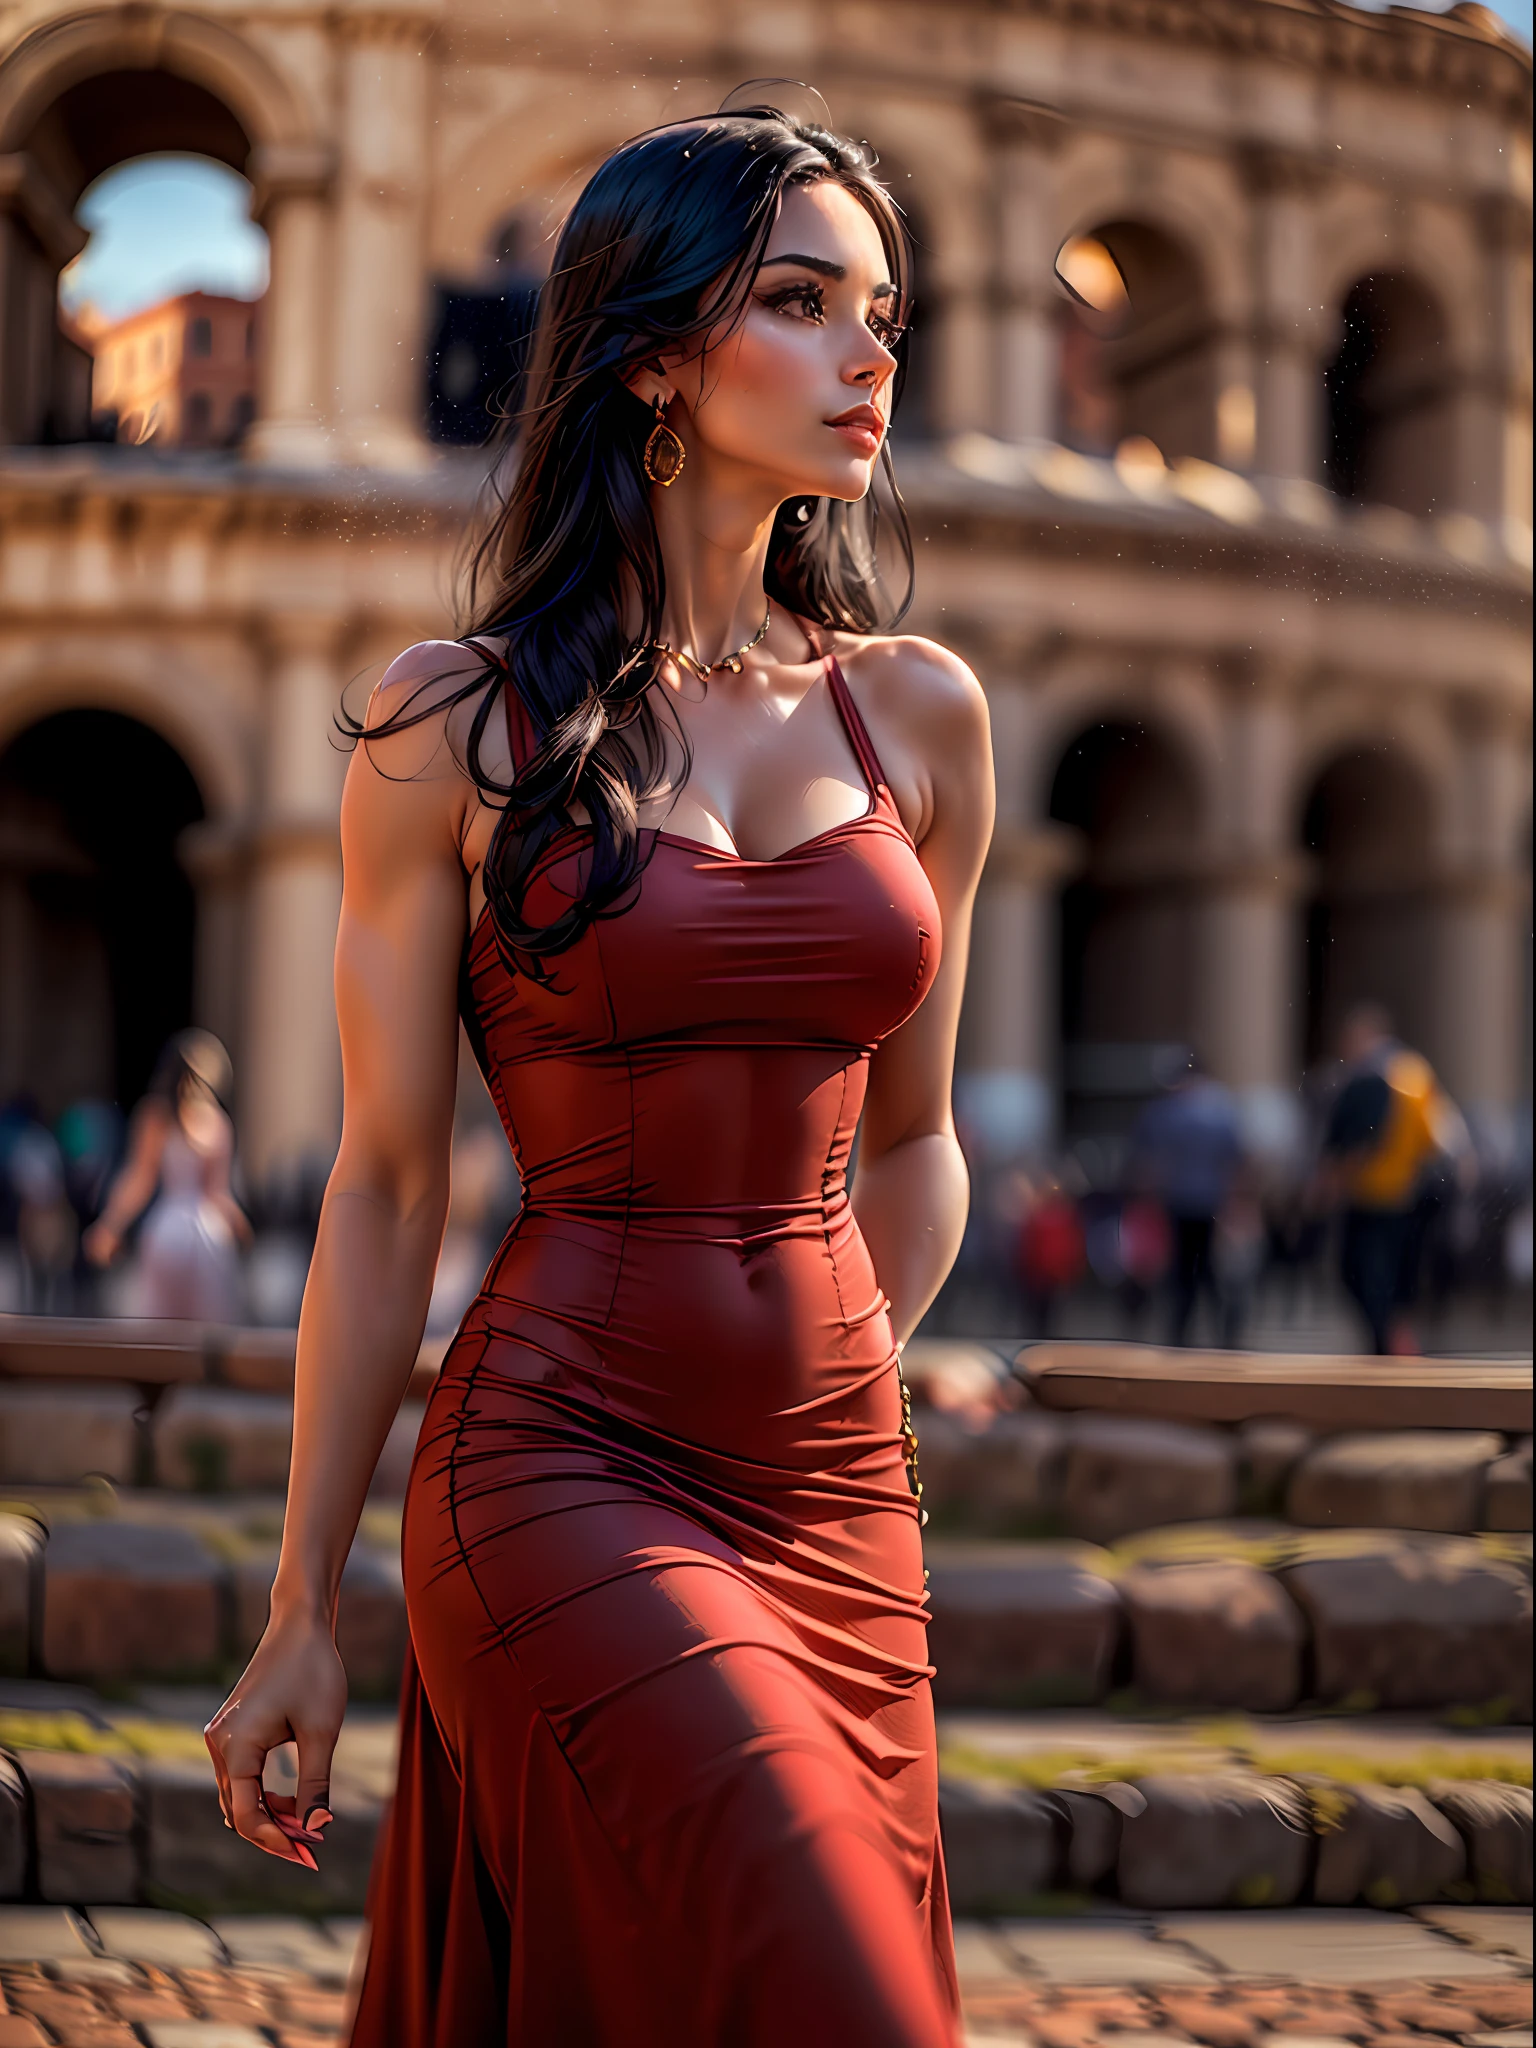 (chef-d&#39;œuvre, Haute résolution, photo-réaliste:1.4), (capturer une superbe femme aux longs cheveux noirs, portant une robe rouge moulante qui accentue son physique attrayant:1.3), (la robe élégante épousant ses courbes et mettant en valeur sa silhouette séduisante:1.2), (son attitude confiante et posée alors qu&#39;elle se promène près de l&#39;emblématique Colisée de Rome:1.3), (Appareil photo sans miroir Canon EOS R5:1.2), (associé à un Canon RF 85mm f/1.Objectif USM 2L:1.2), (capturant chaque détail de sa présence captivante et du magnifique environnement:1.2), (le Colisée dominant en arrière-plan, un symbole de l&#39;histoire ancienne et de la grandeur:1.2), (le rouge vif de sa robe contrastant avec l&#39;architecture ancienne en pierre:1.2), (une journée chaude et ensoleillée, avec une douce lumière du soleil améliorant la scène:1.1), (une charmante photo d&#39;une femme respirant l&#39;élégance et le charme, explorer la beauté historique de Rome:1.2).